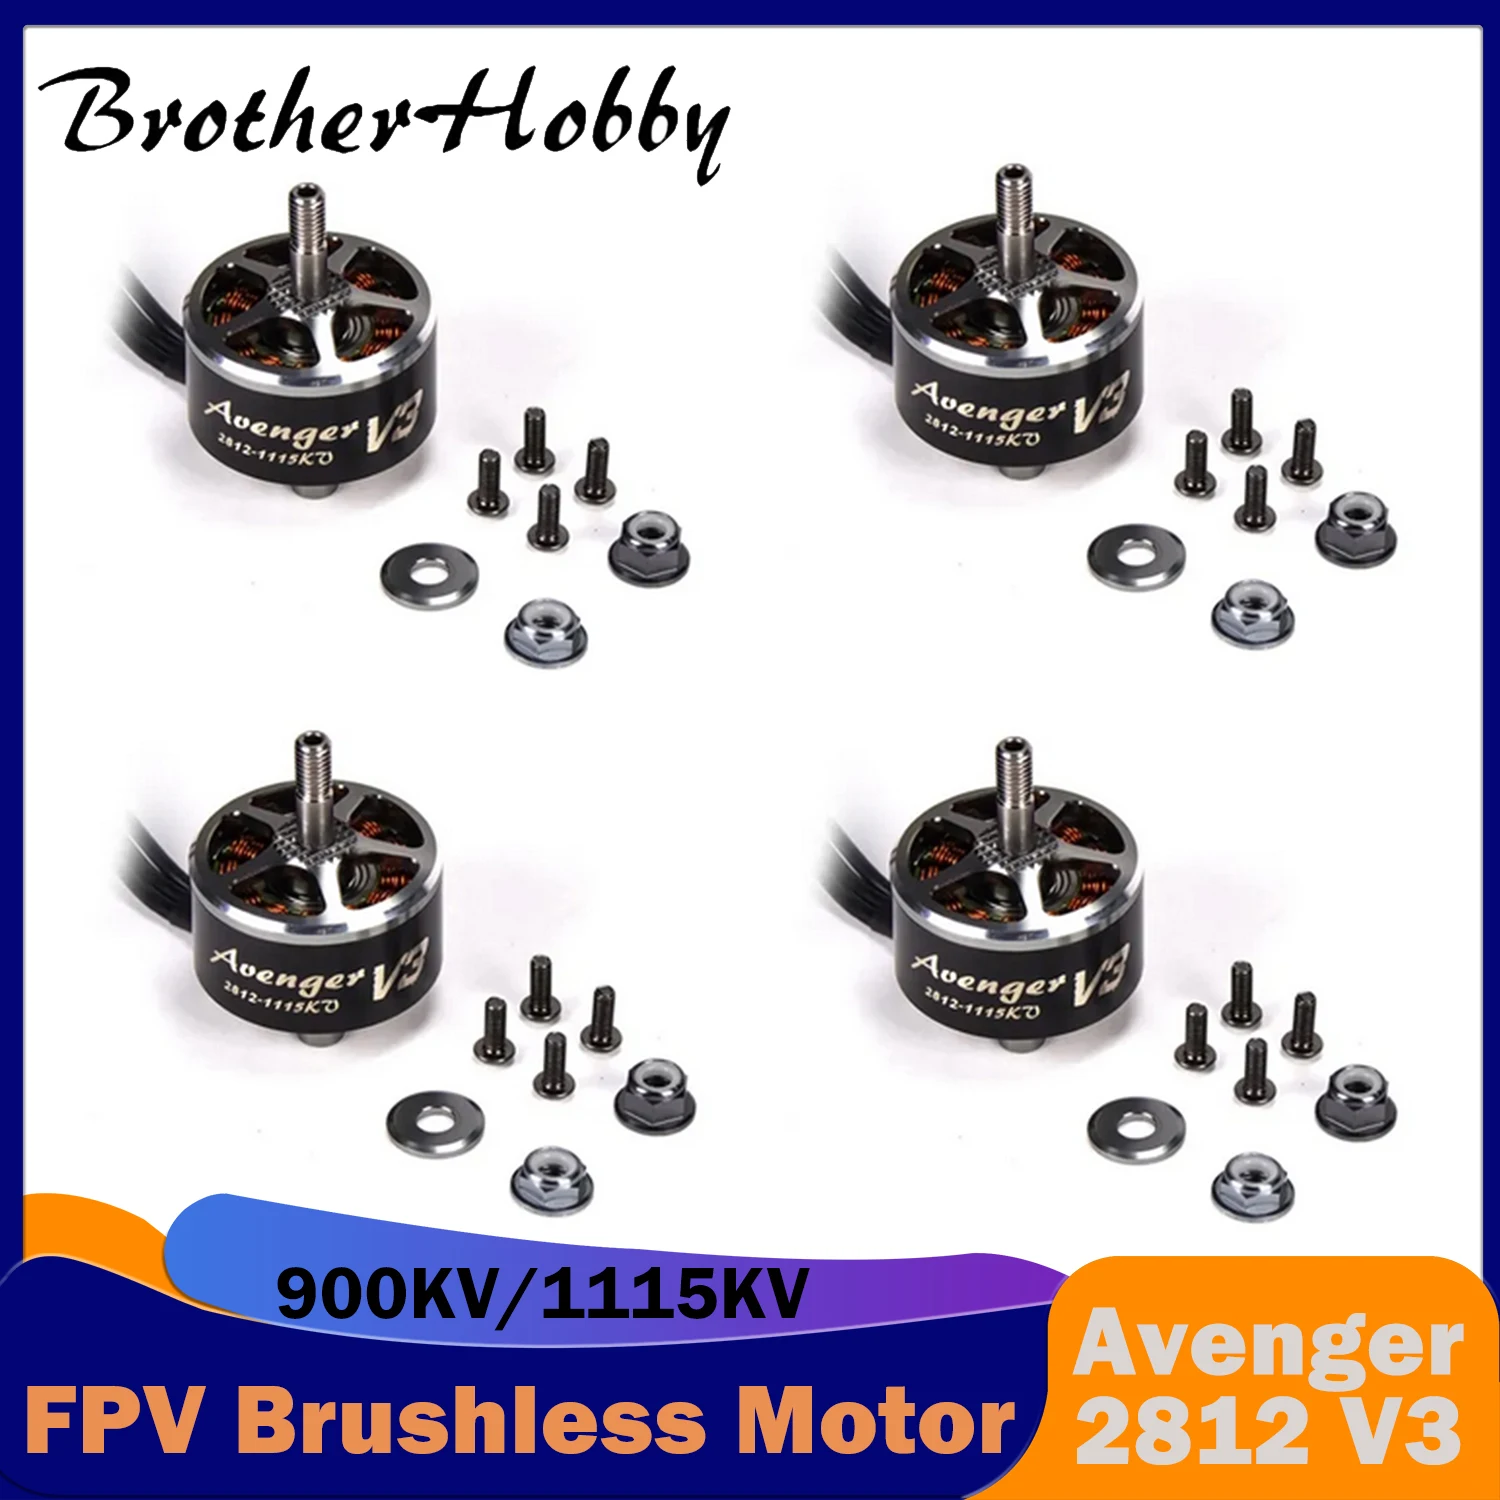 

BrotherHobby Avenger 2812 V3 FPV Brushless Motor 900KV/1115KV 4-6S Outer Rotor(CW) for RC Plane Race Drone Quadcopter Mutirotor